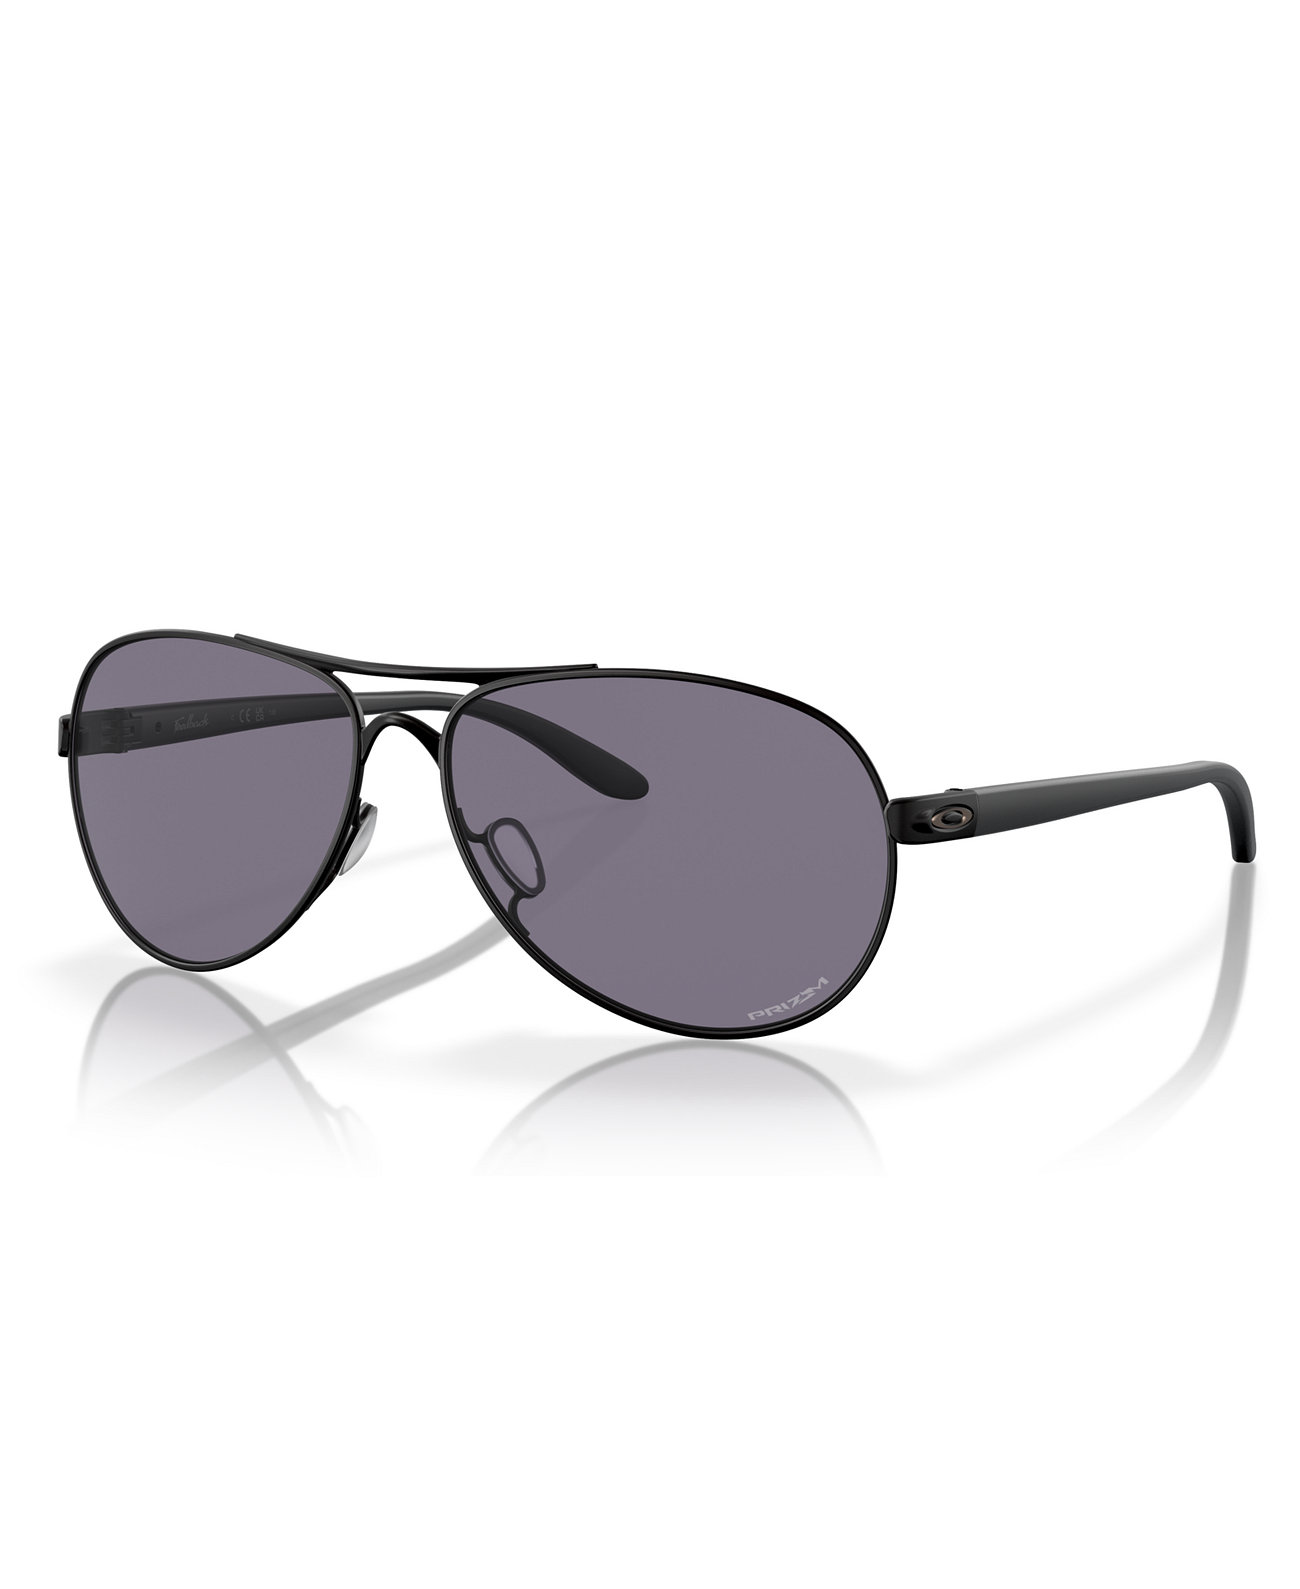 Women's Sunglasses, Women's Standard Issue Feedback Oakley